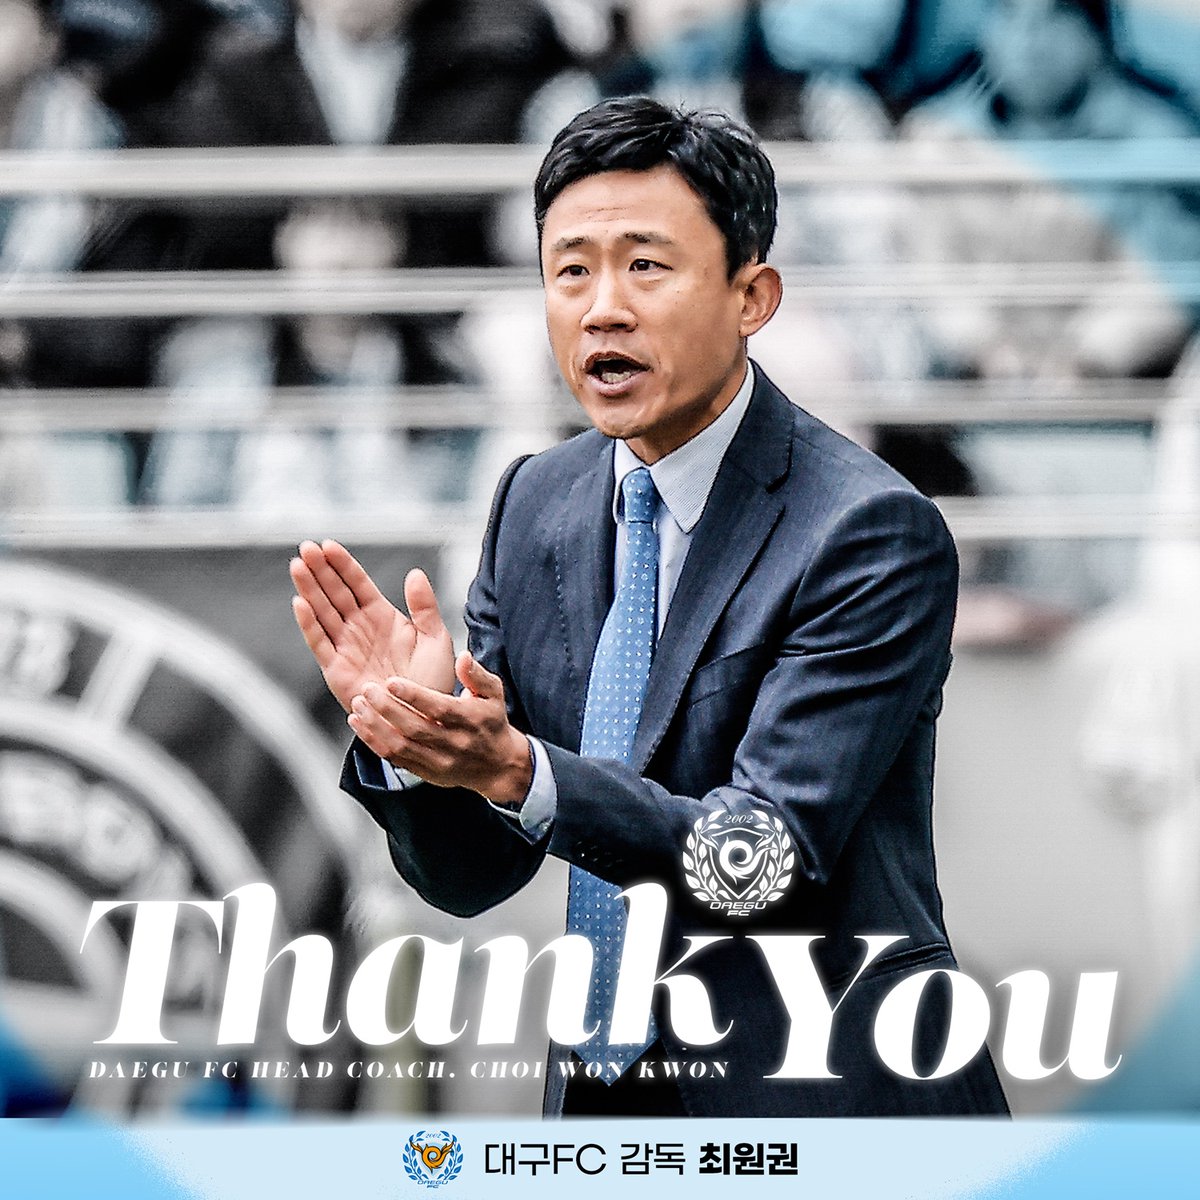 [OFFICIEL] Choi Won-gwon a démissionné de son poste d'entraîneur de Daegu ! 

Jeong Song-ho (interne) prend le relais temporairement. 

#KLeague | #CoréeDuSud 🇰🇷